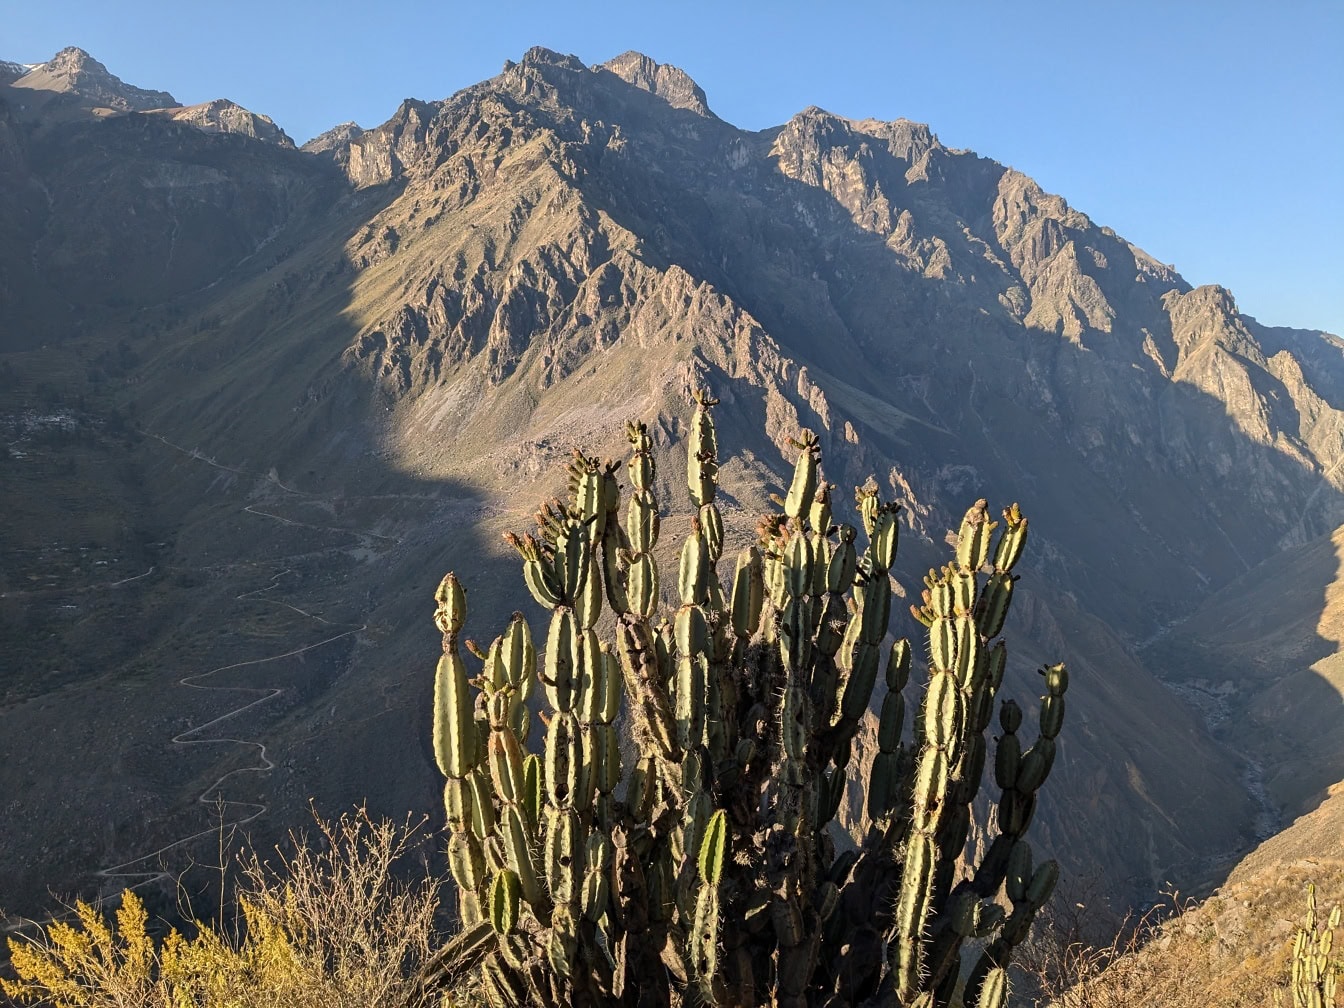 Кактус под названием перуанский яблочный кактус (Cereus repandus) перед горой в каньоне Колка в Перу